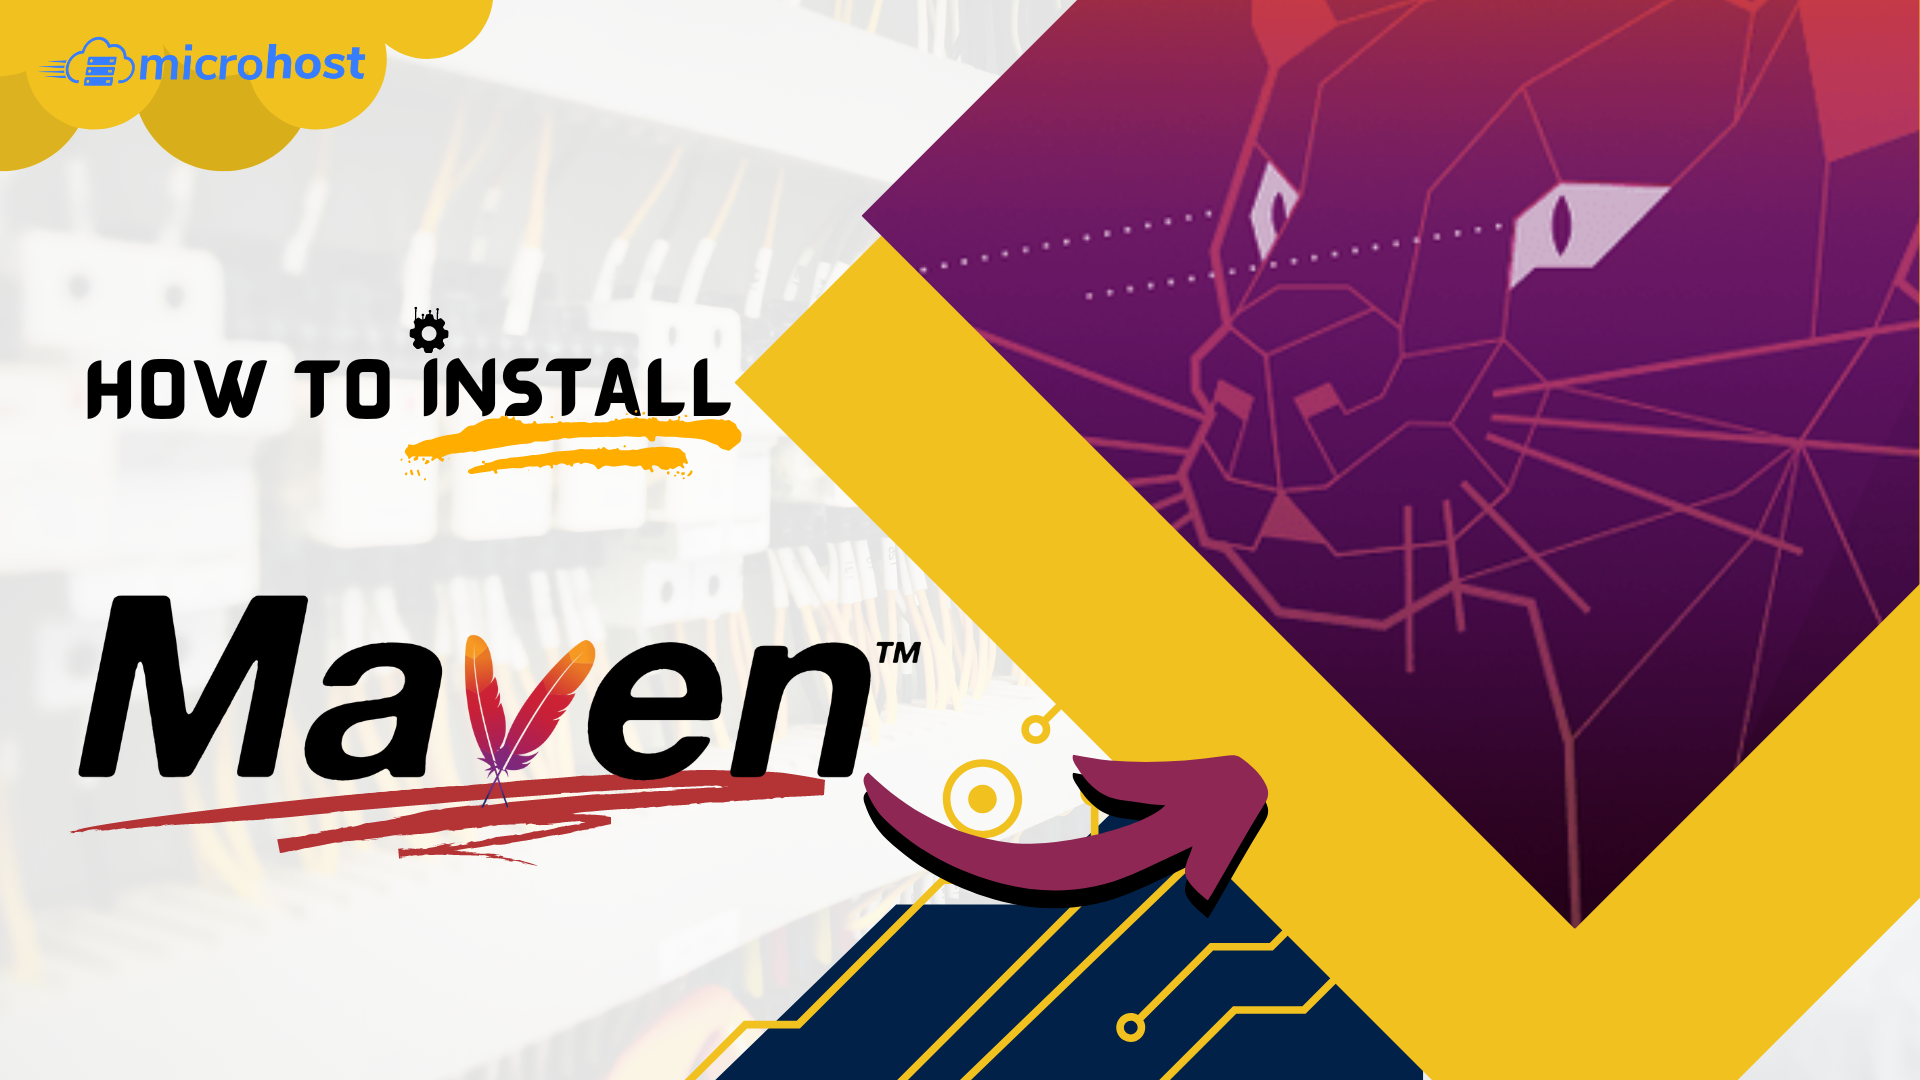 How to install Maven on Ubuntu